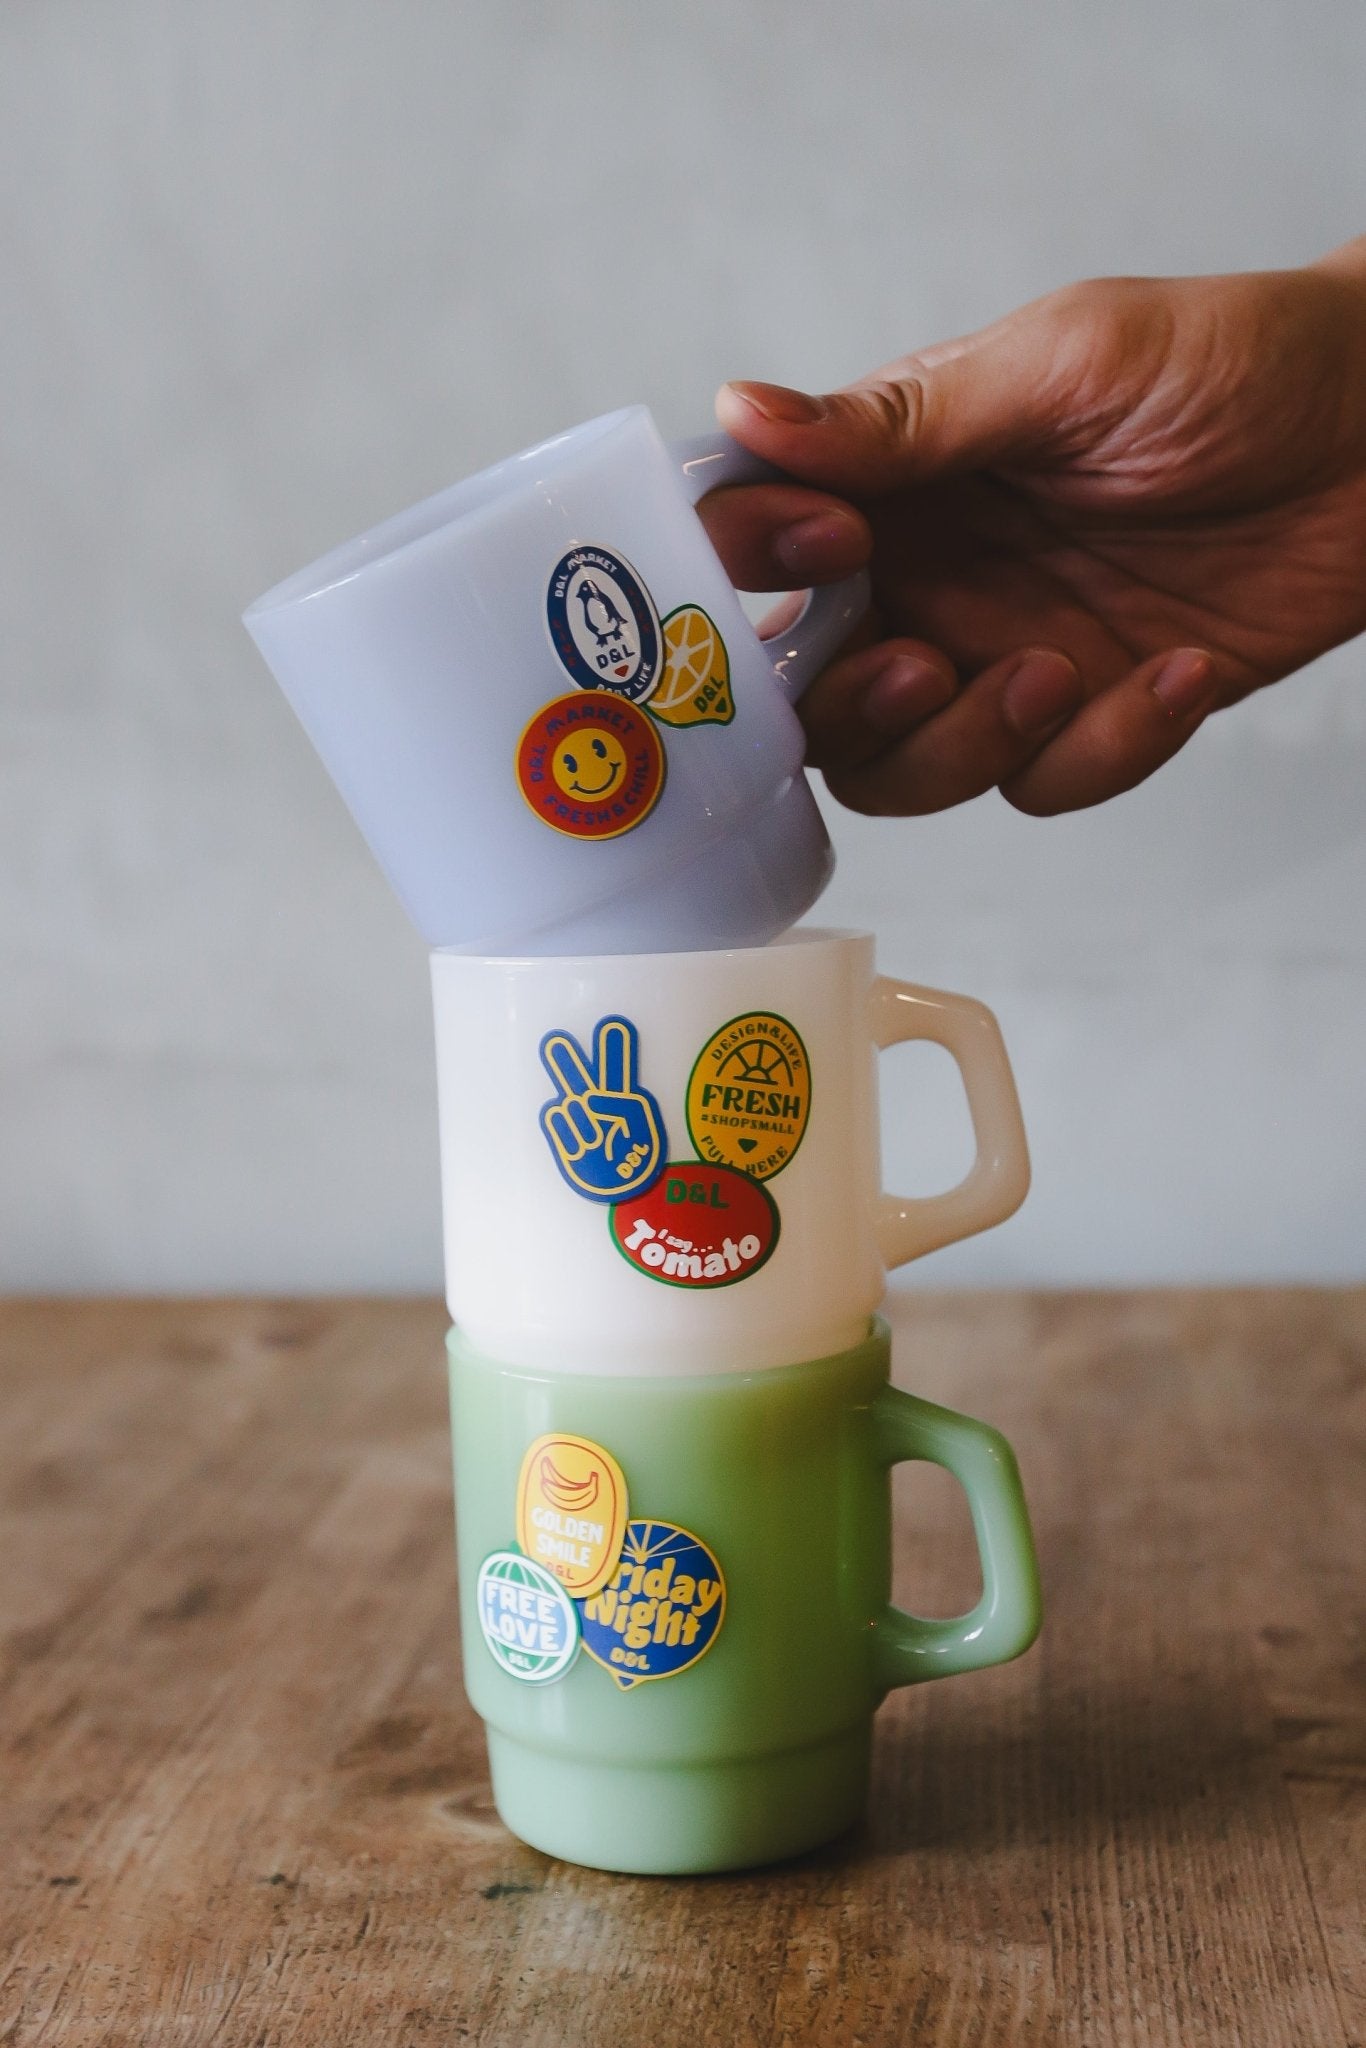 D&L Market Milk Glass Mug 牛奶杯 - A Design&Life Project